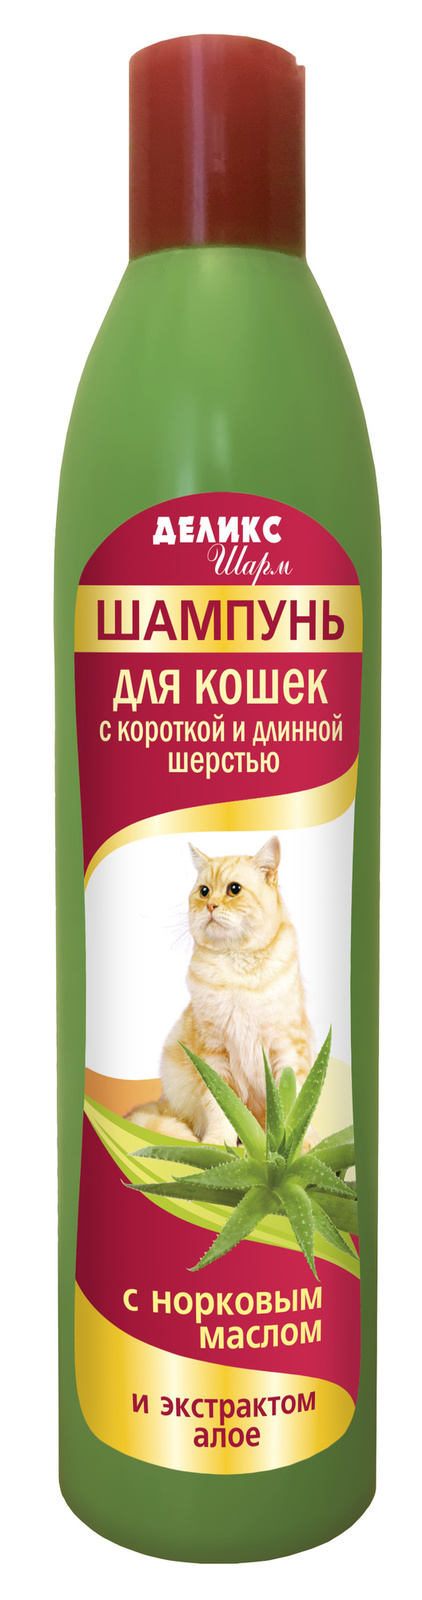 Бионикс зоошампунь Делкис Шарм для кошек с короткой и длинной шерстью (270 г)